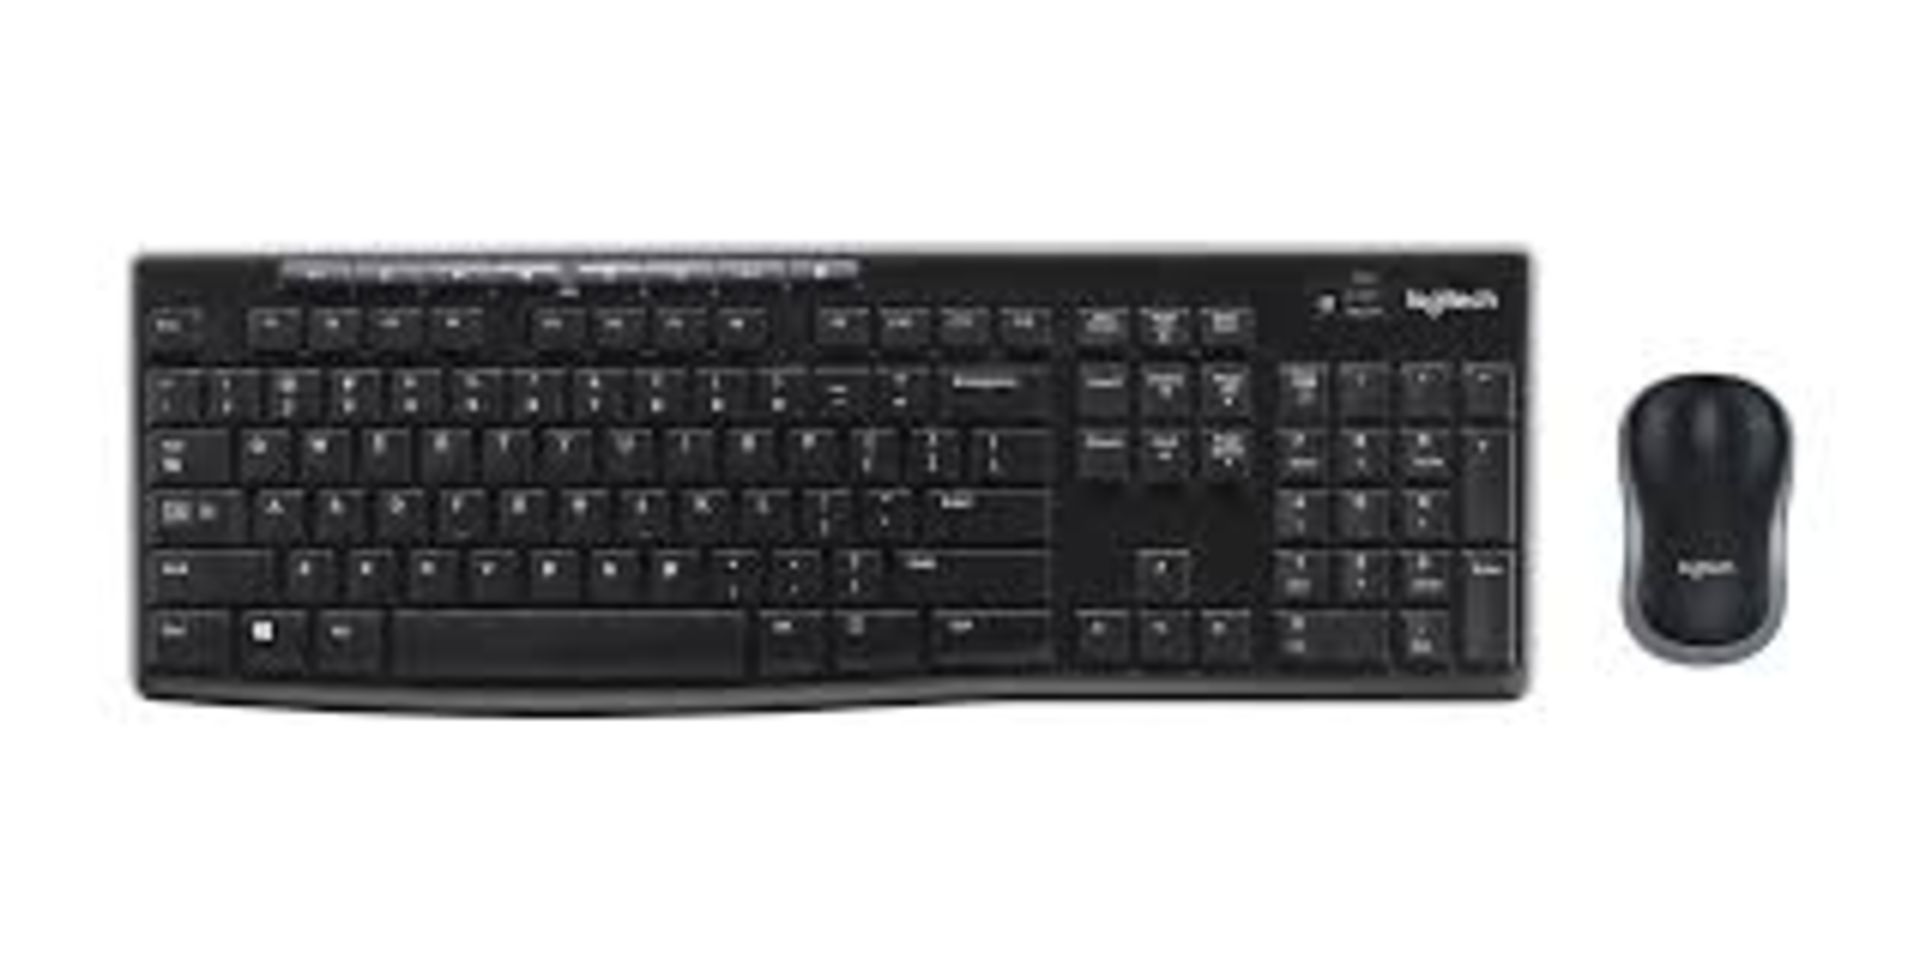 2 x MK270 Wireless Keyboard and Mouse Combo | Logitech. - PW.